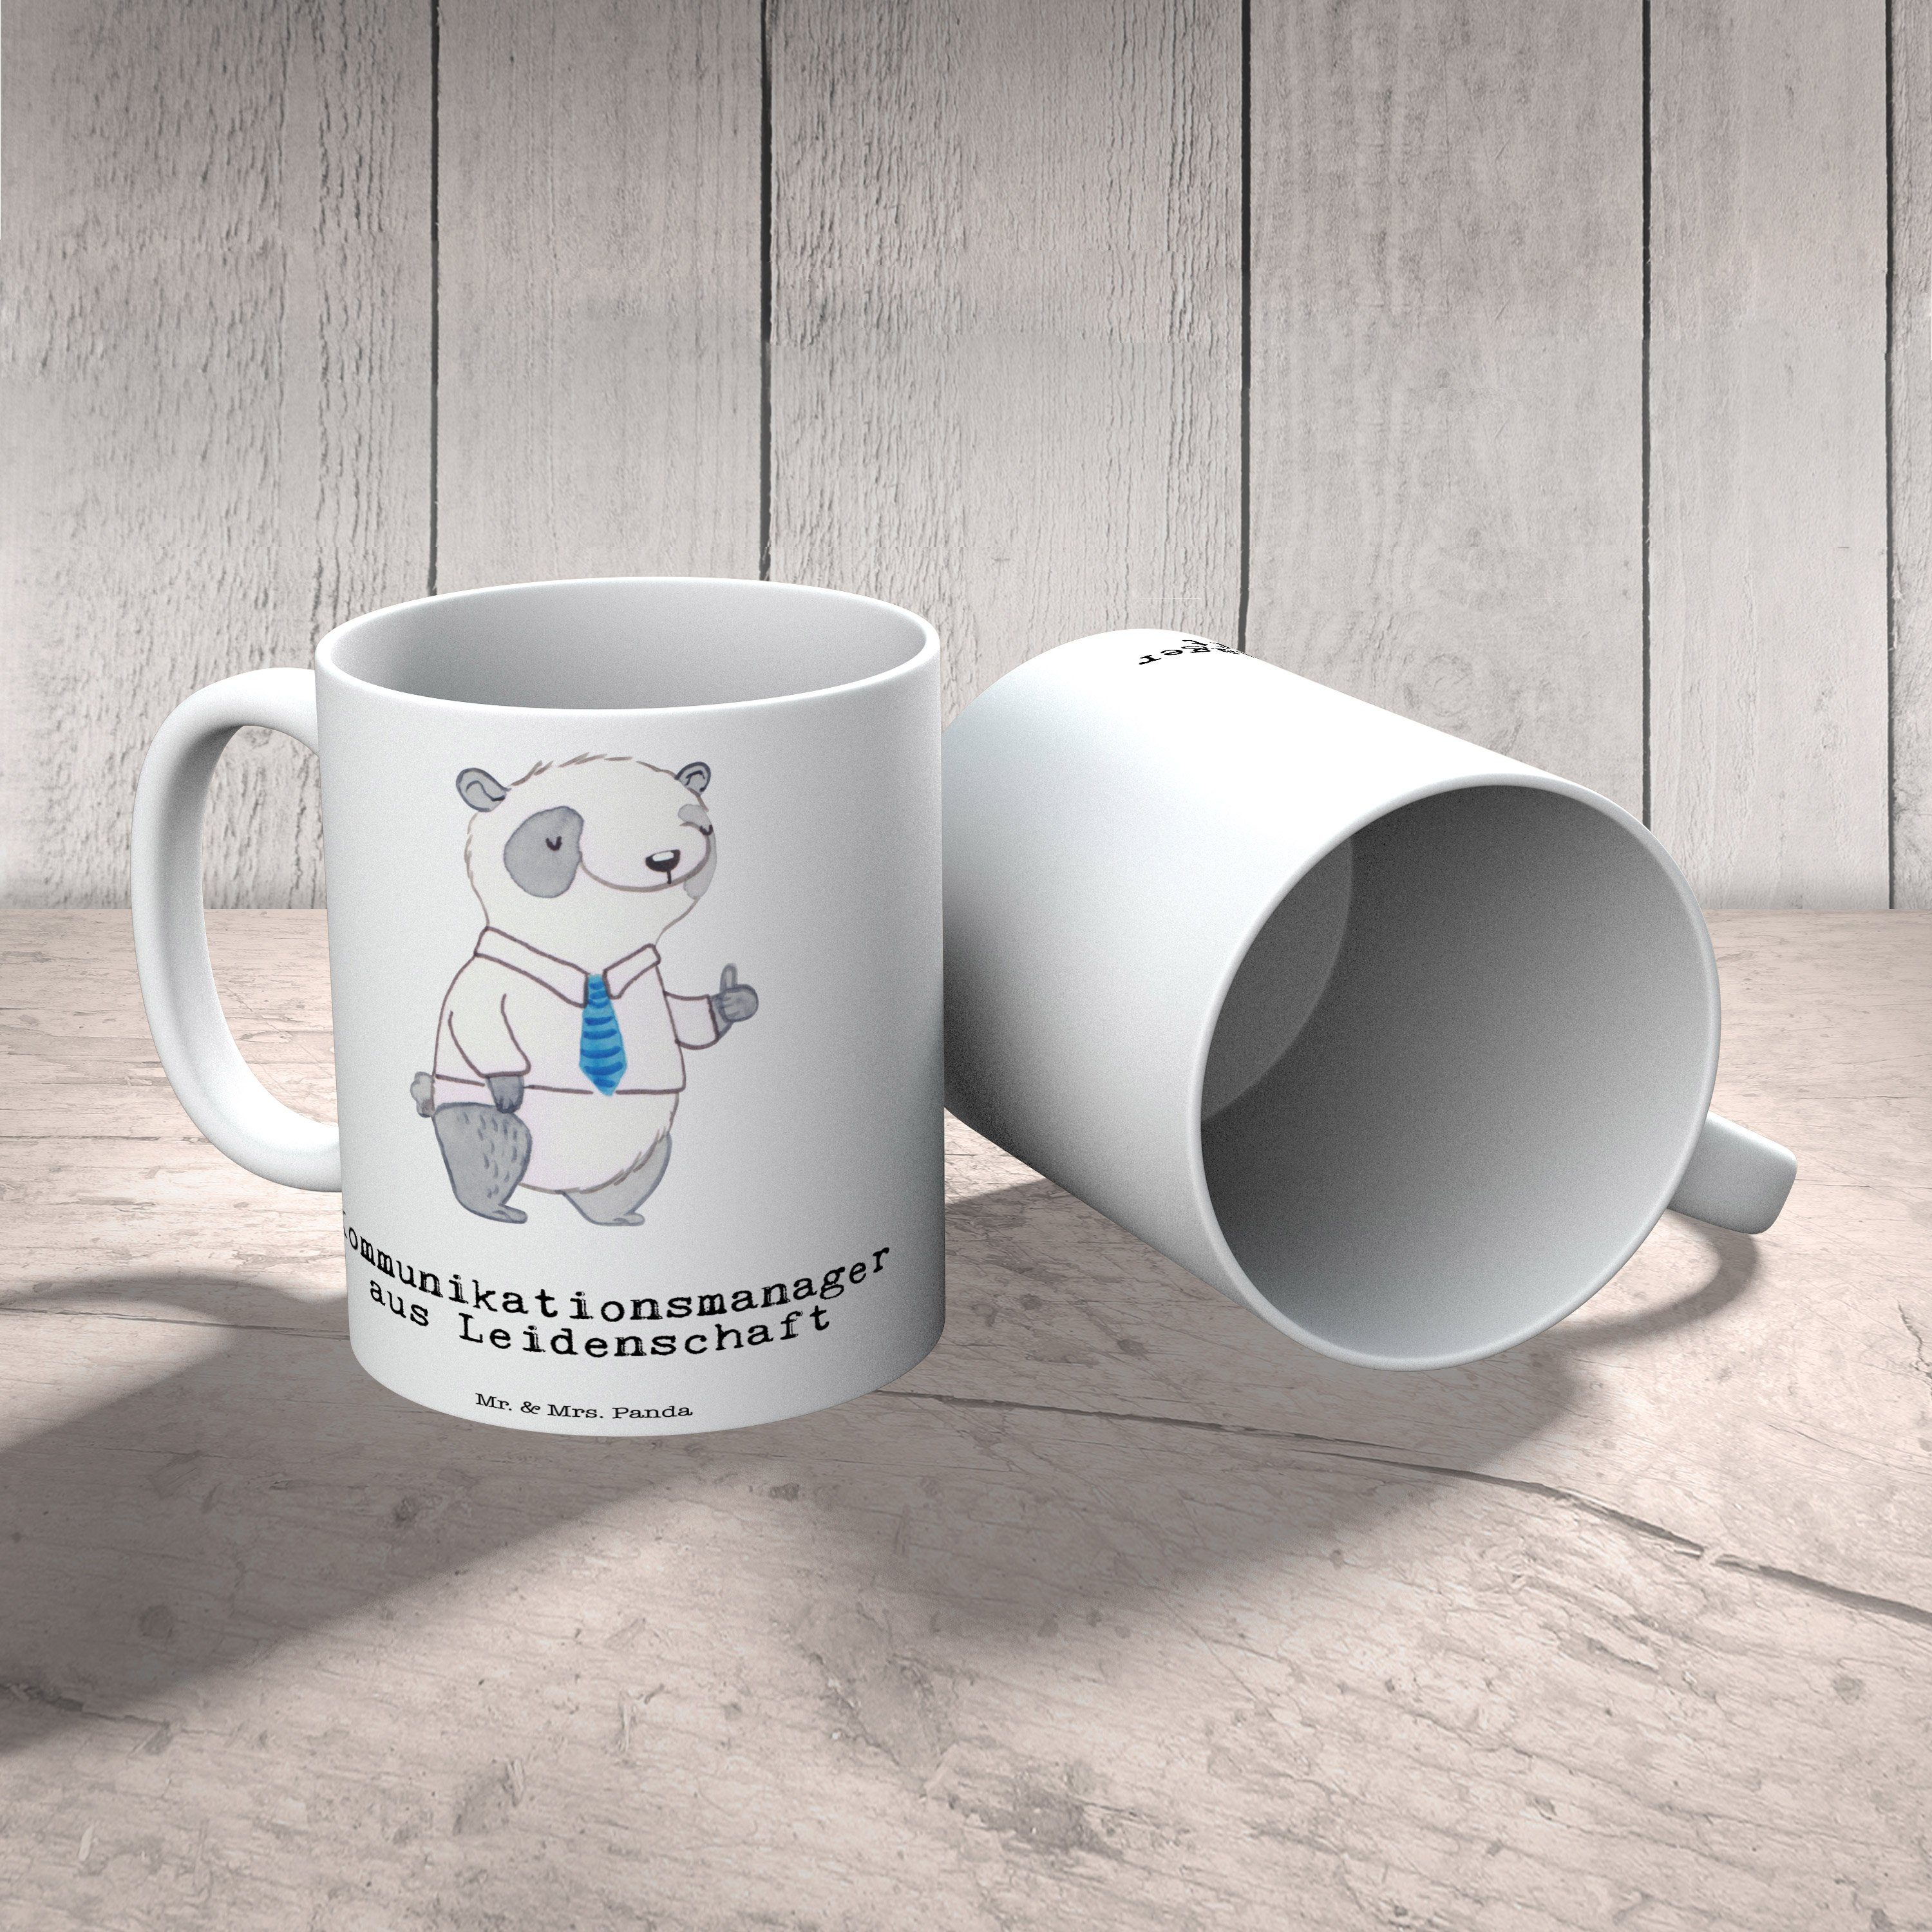 Mr. & Mrs. aus - Keramik Leidenschaft Panda - Kaff, Tasse Kommunikationsmanager Weiß Geschenk, Firma